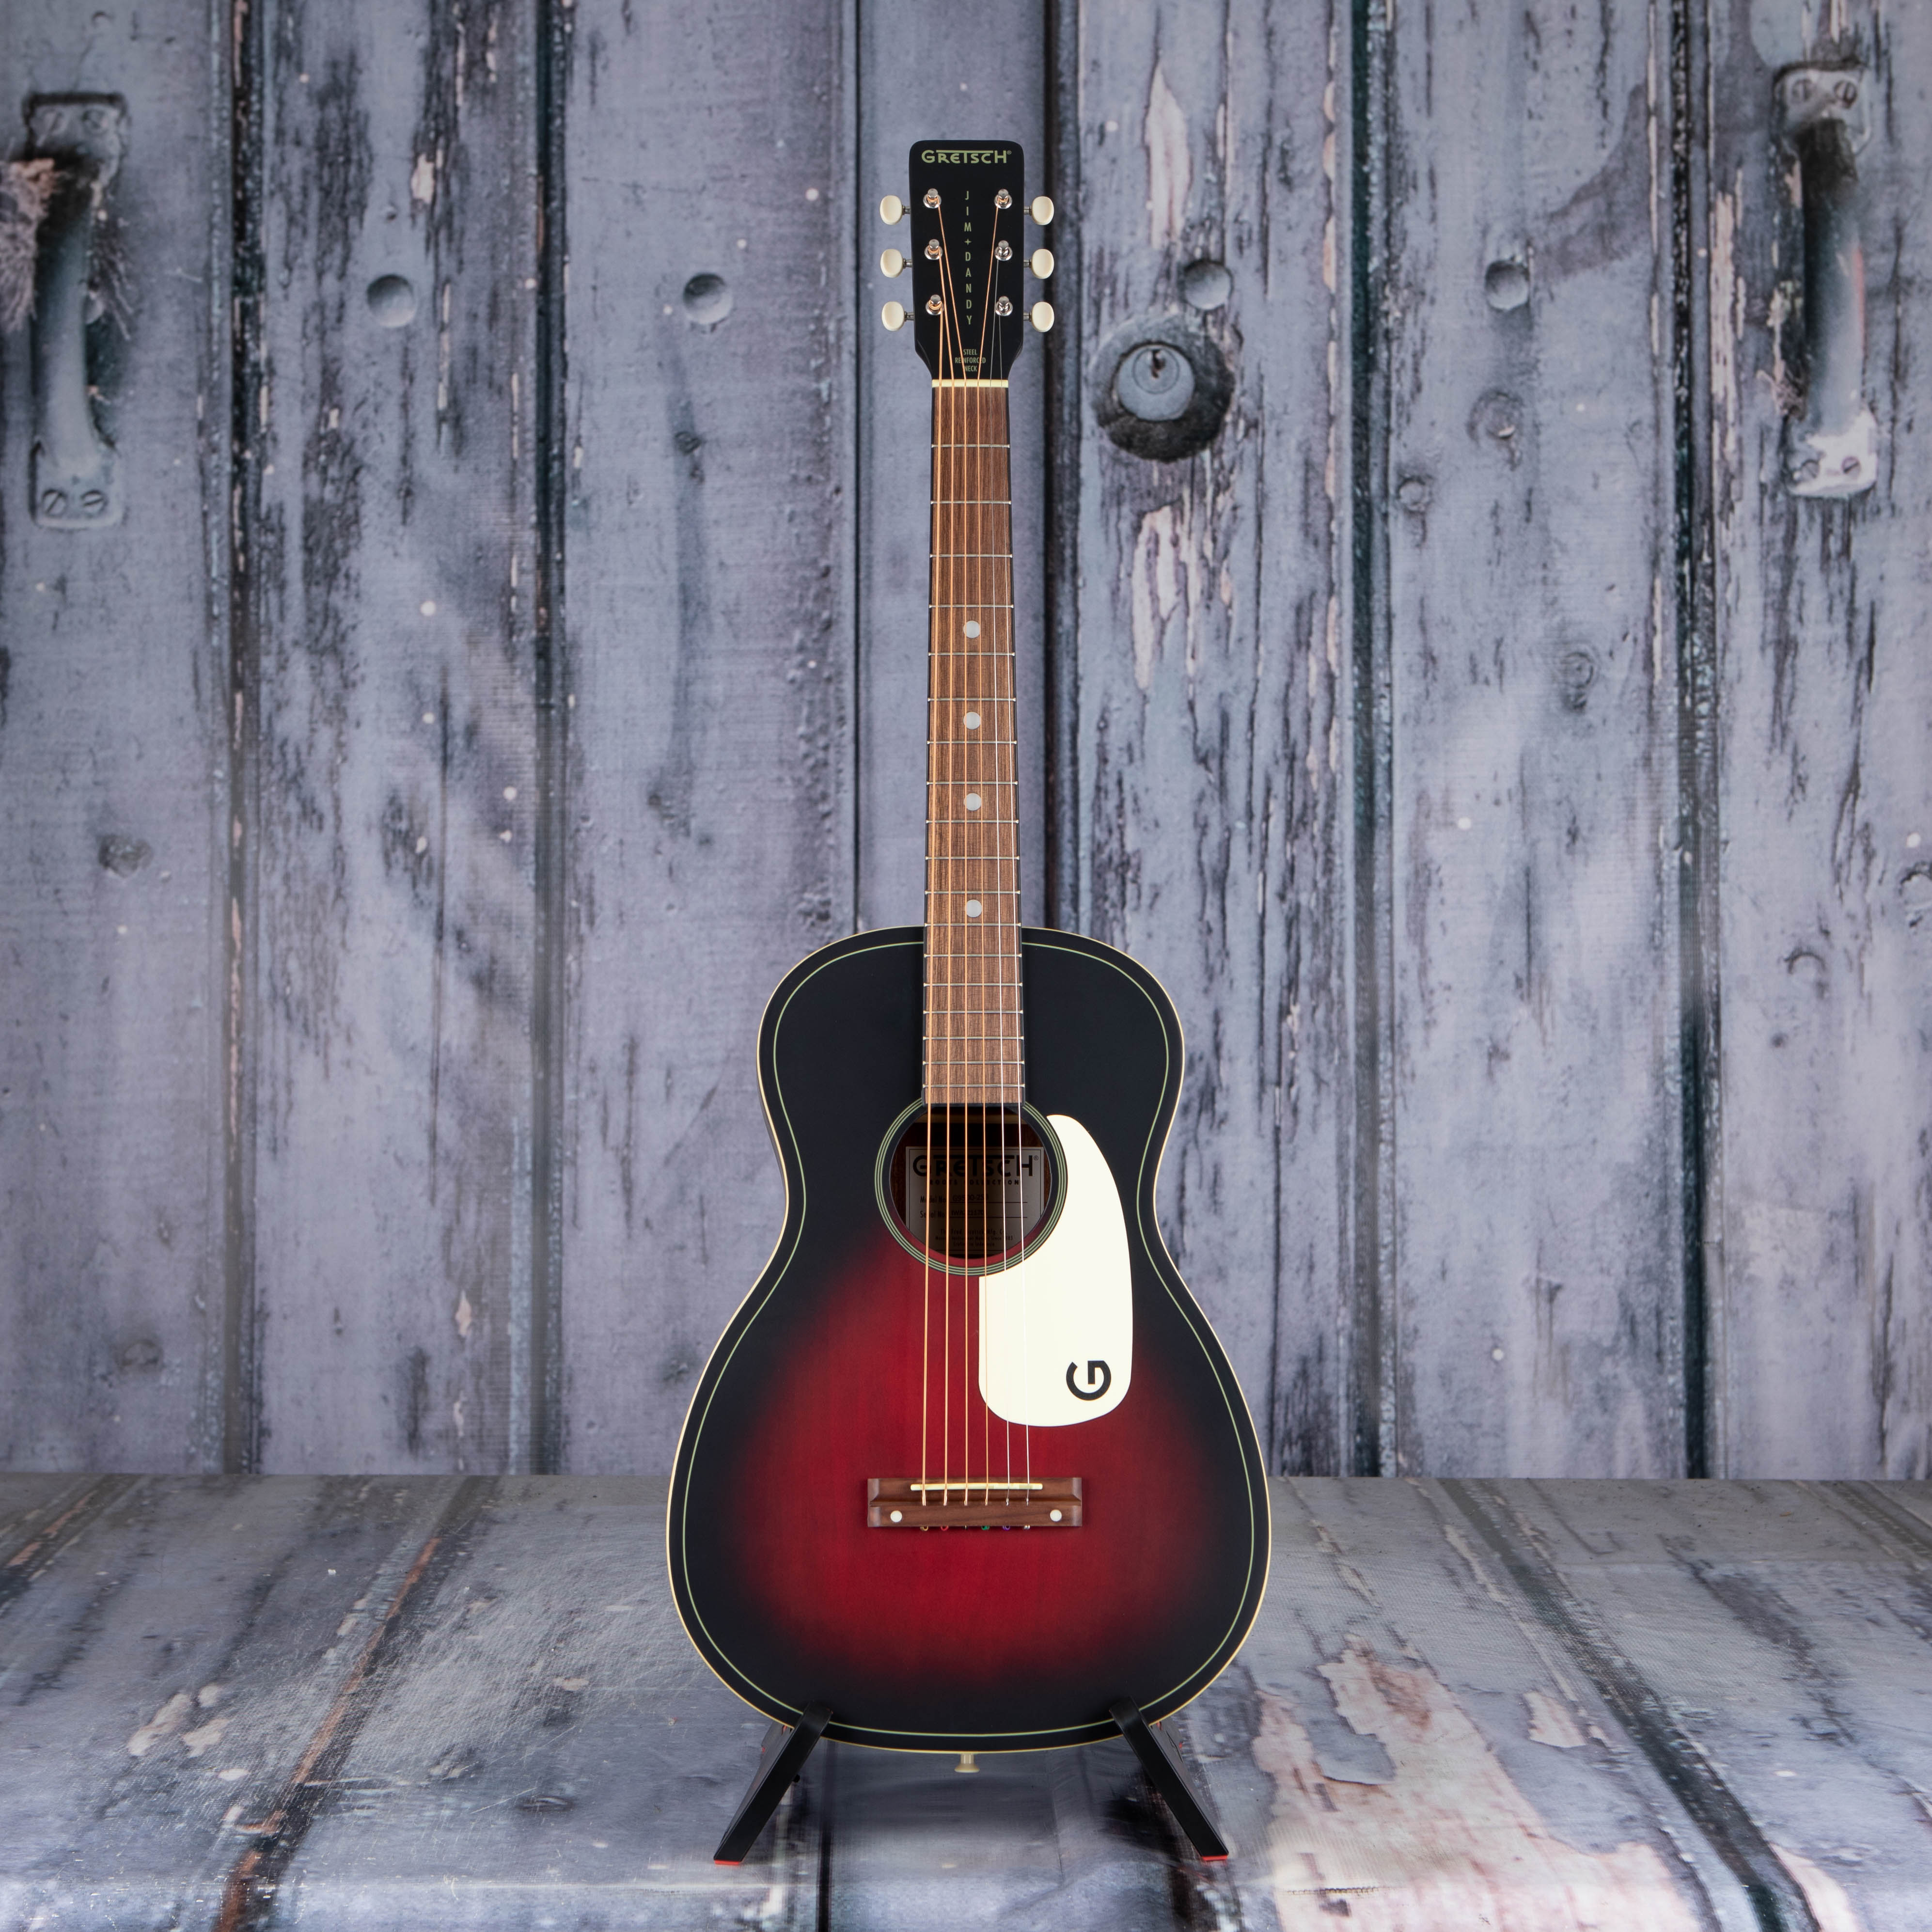 Gretsch G9500 Jim Dandy 24" Flat Top Acoustic Guitar, 2-Color Sunburst, front